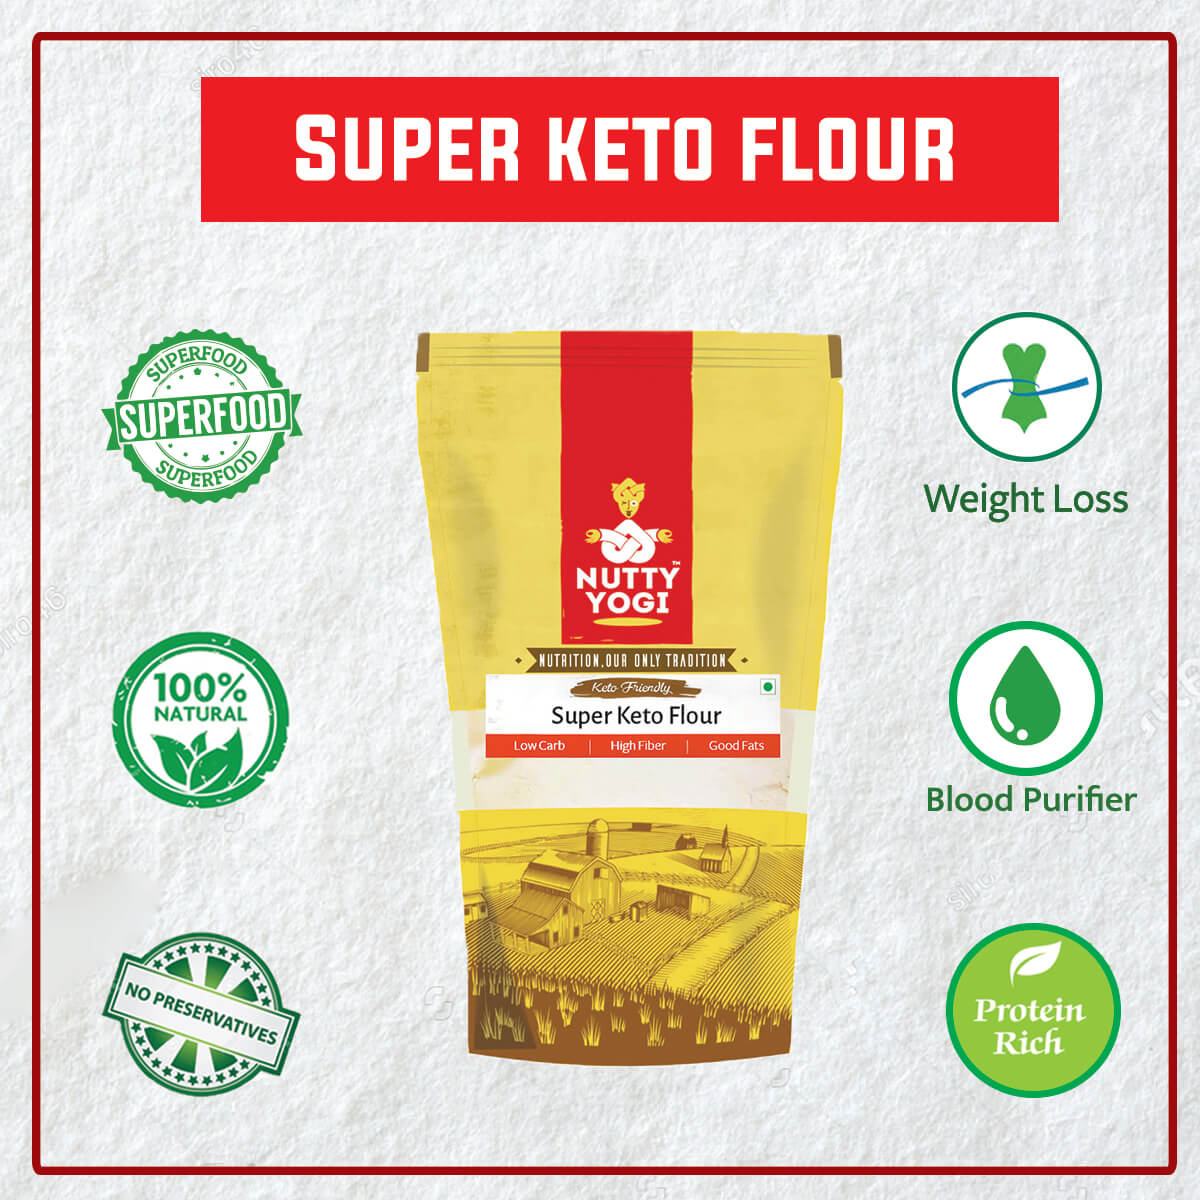 Super Keto Flour.